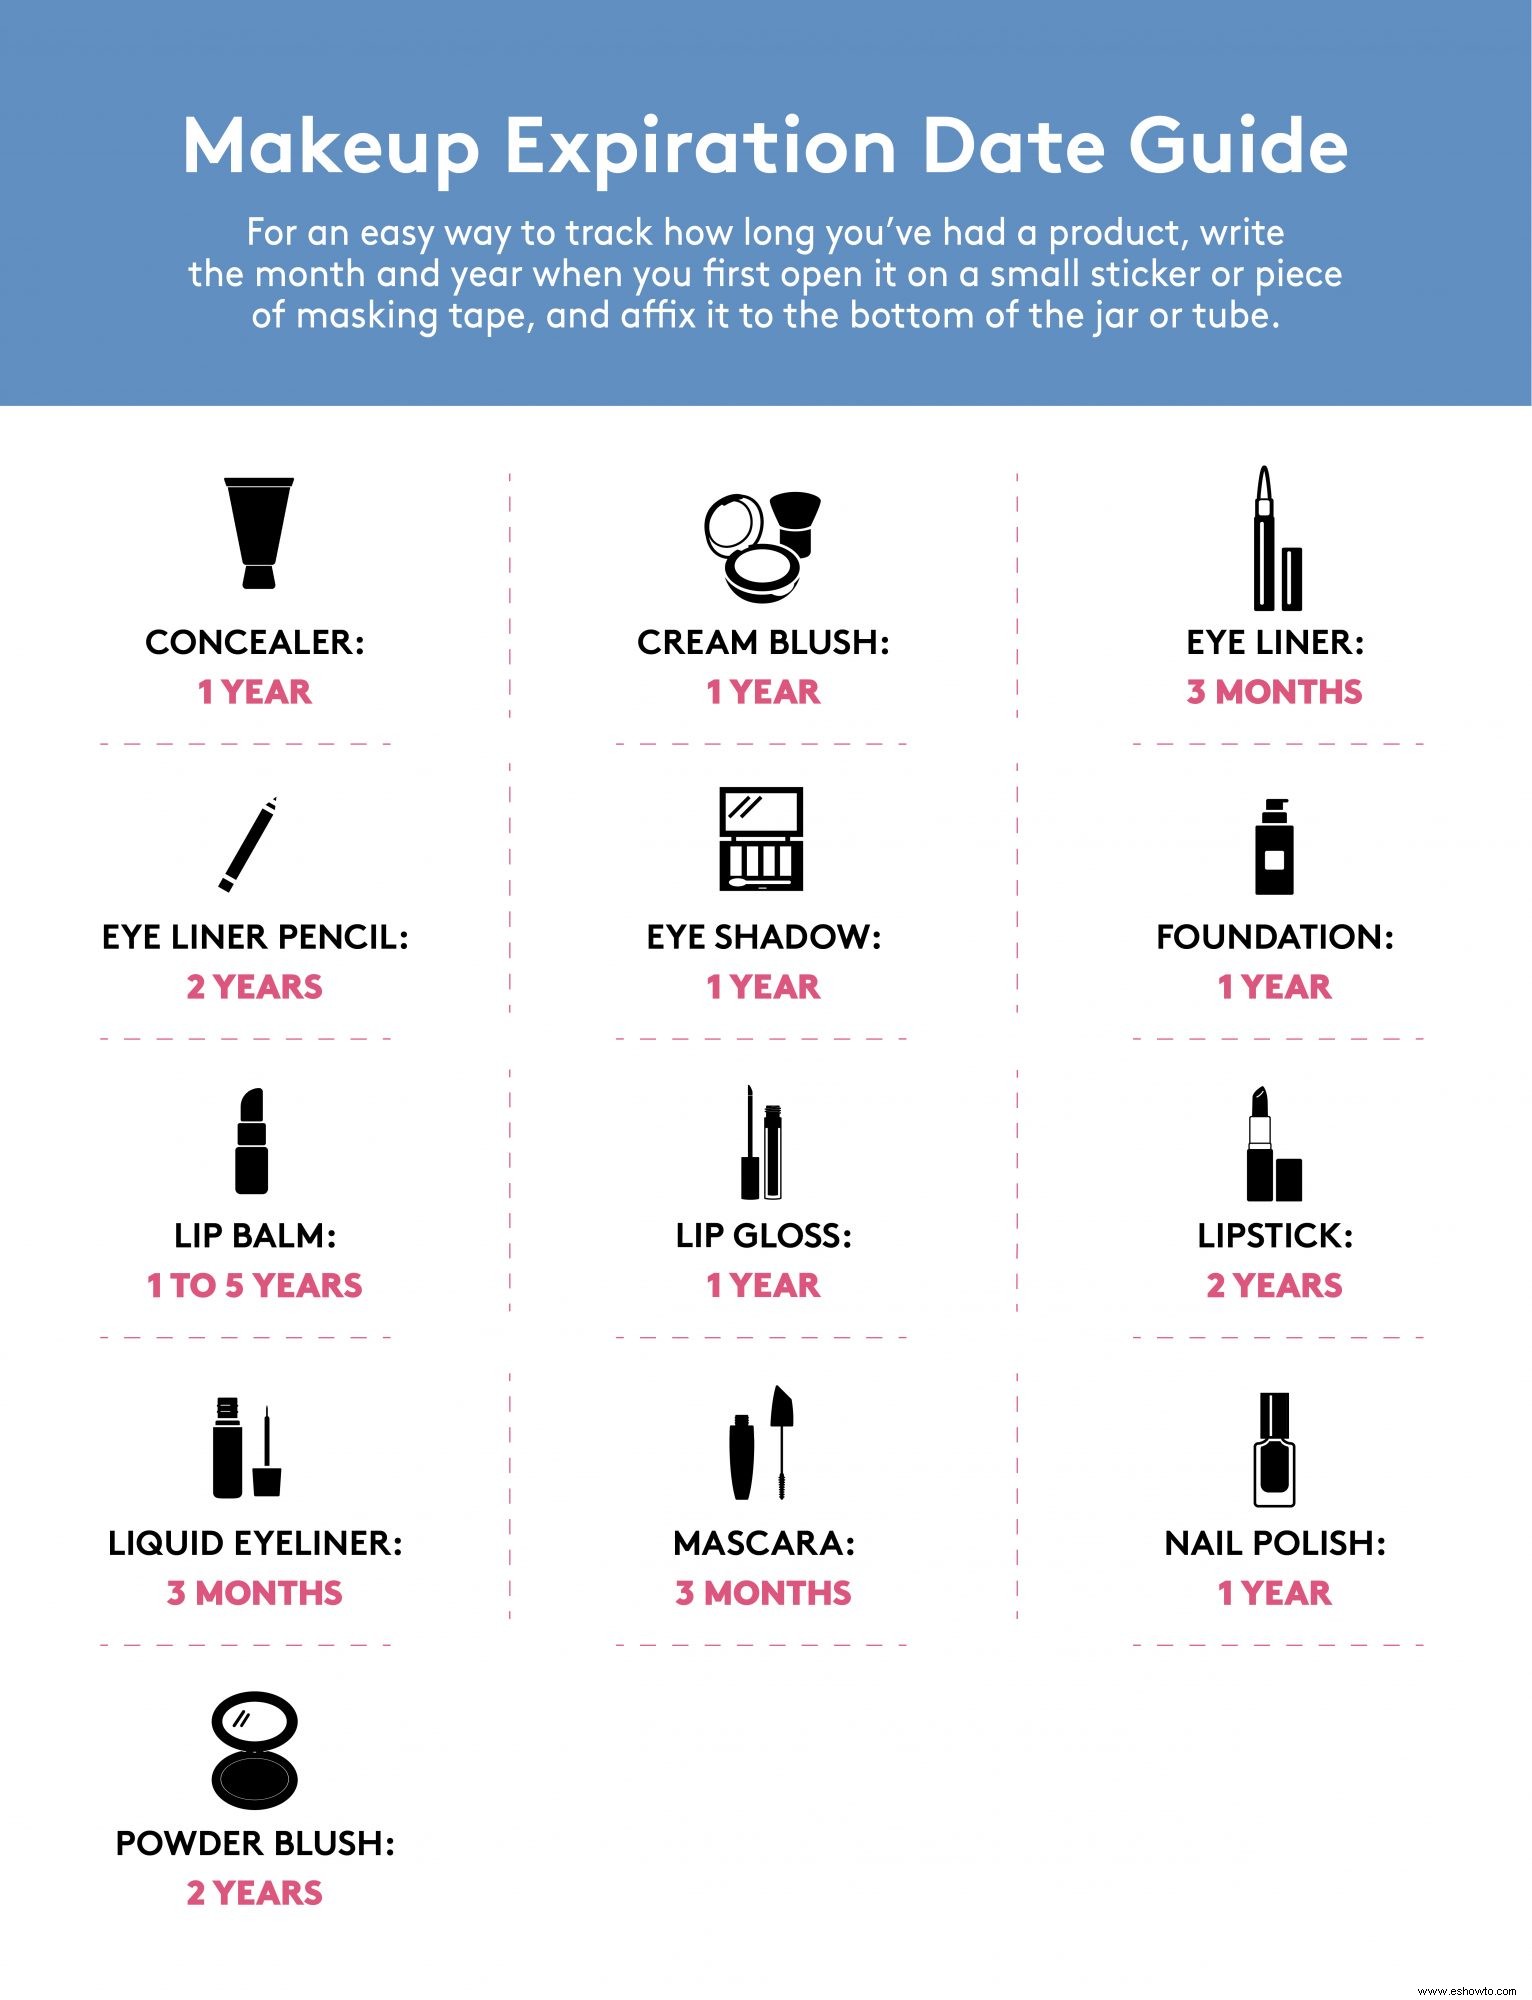 Una guía completa sobre las fechas de vencimiento del maquillaje y la frecuencia con la que debe reemplazar todos los artículos de tocador que posee 